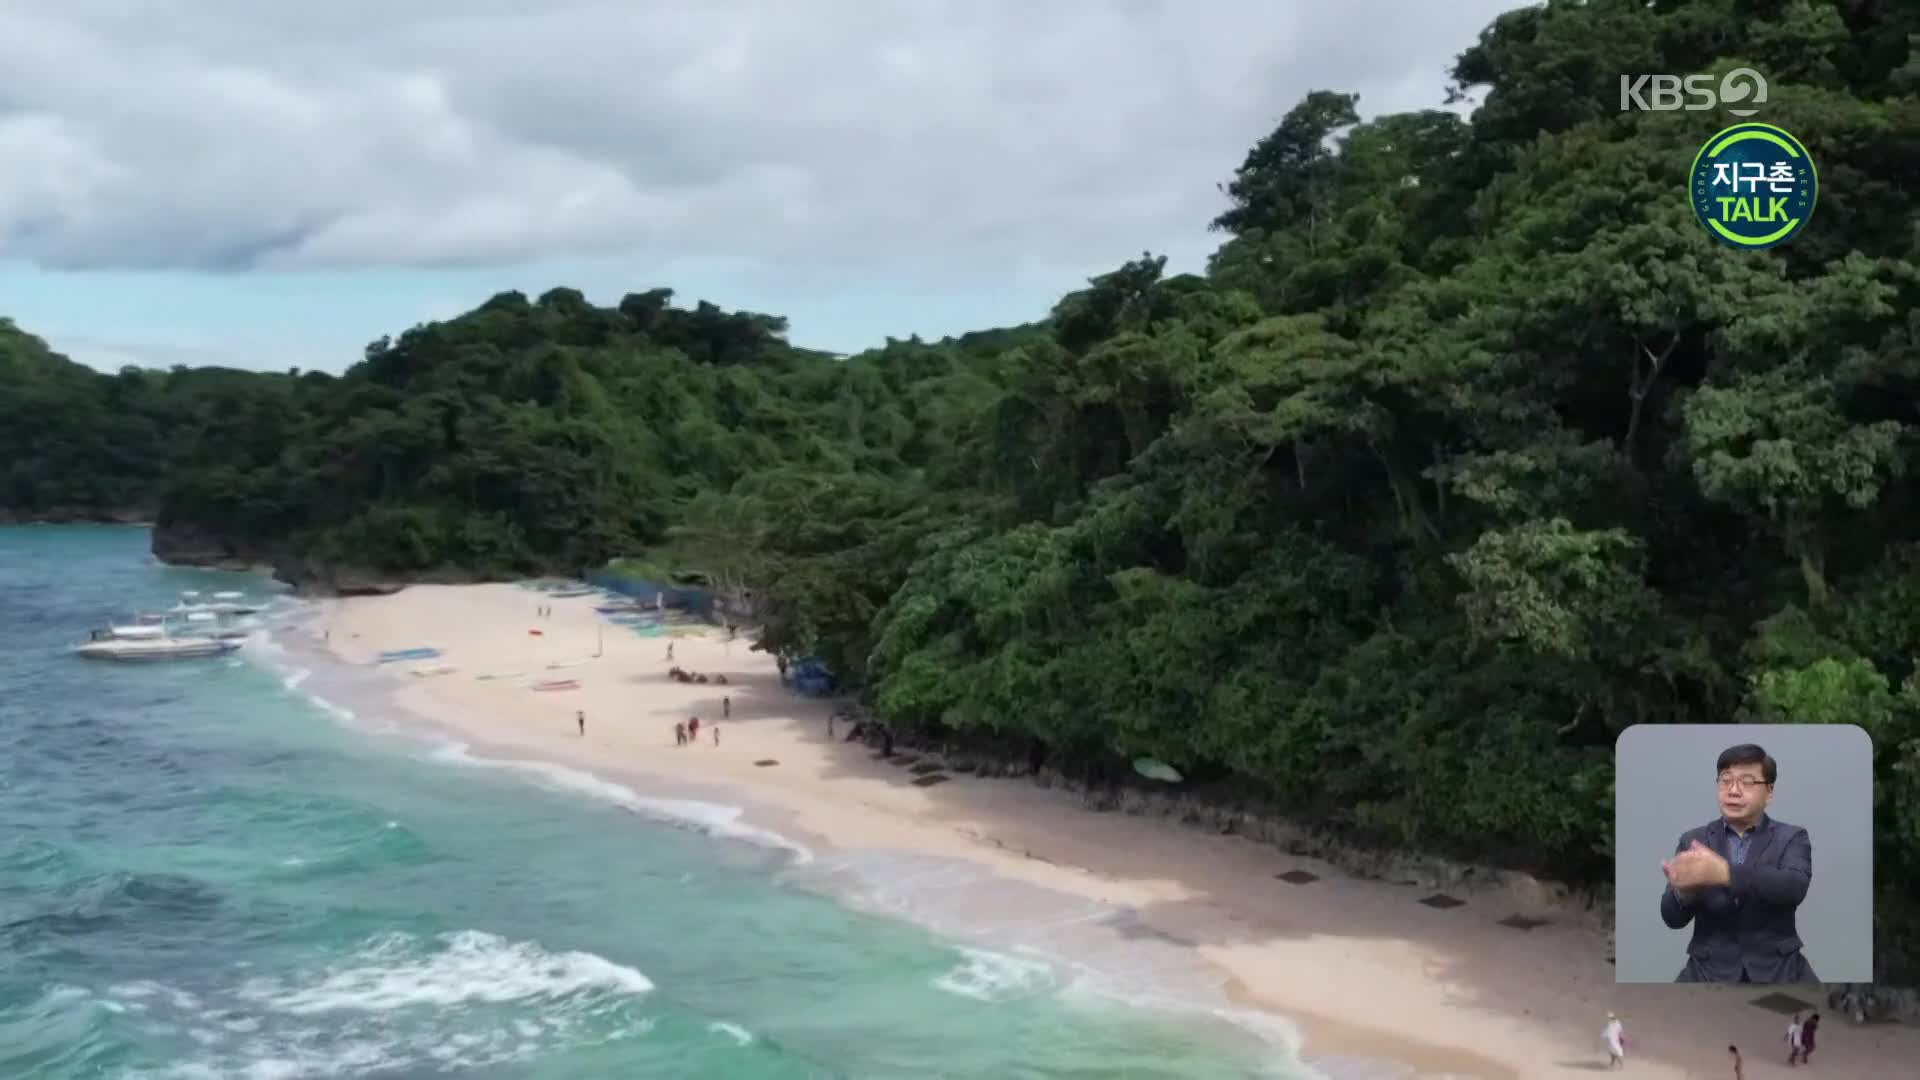 [지구촌 Talk] 코로나19 제한 조치에 깨끗해진 보라카이 섬